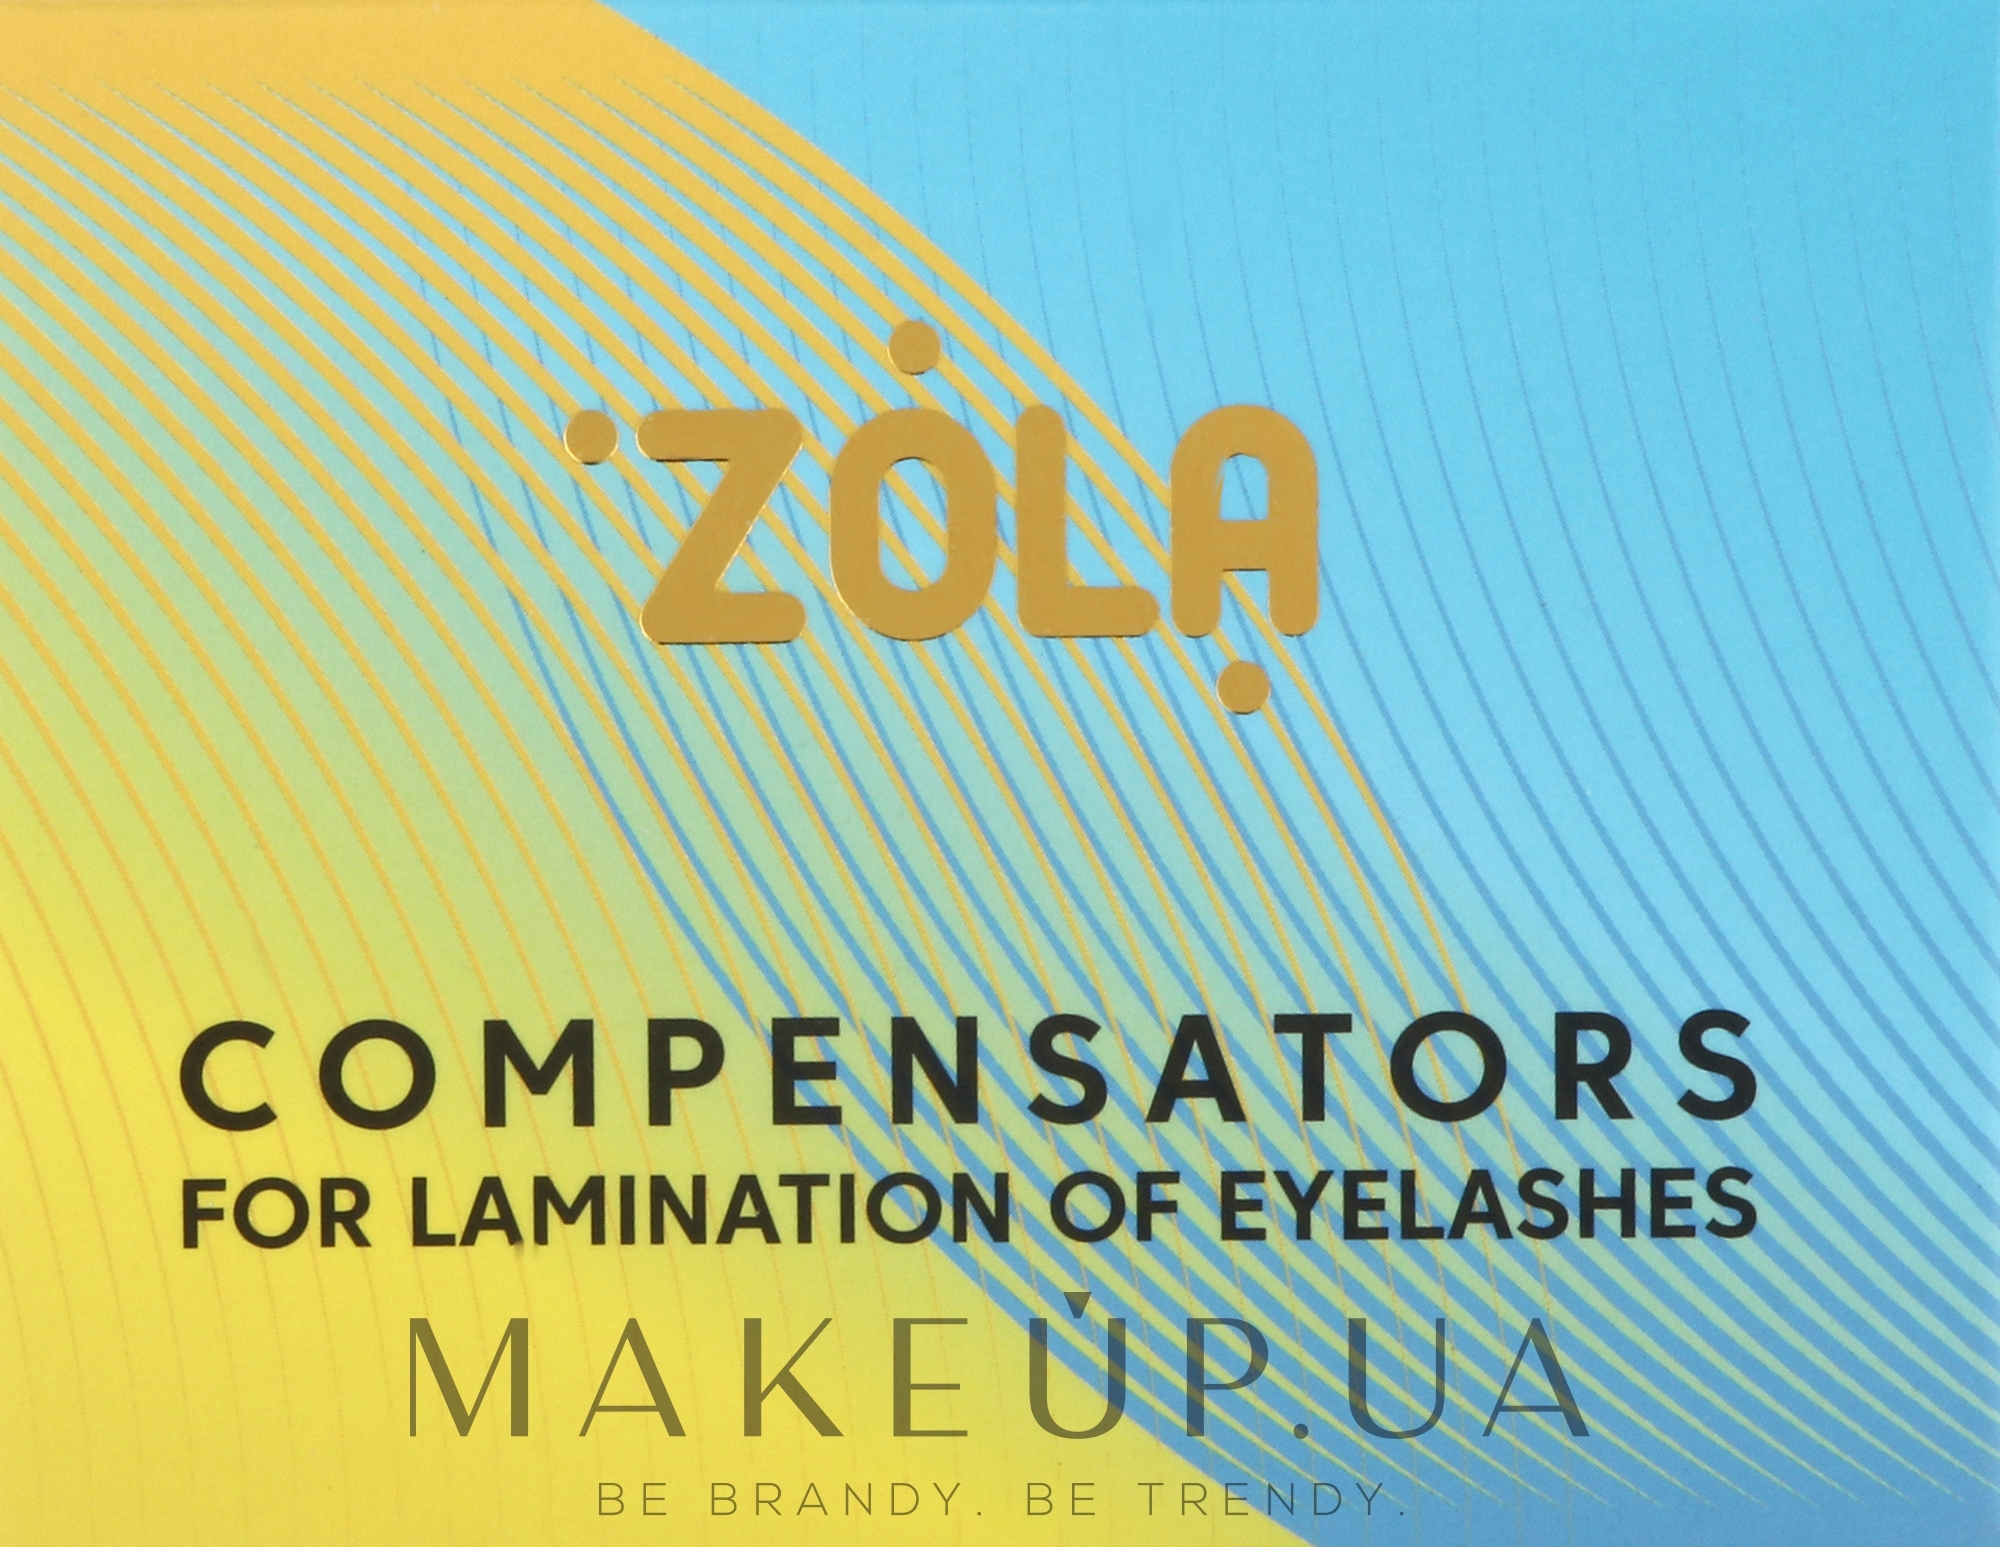 Компенсаторы для ламинирования ресниц, желто-голубые - Zola Compensators For Lamination Of Eyelashes — фото 2шт